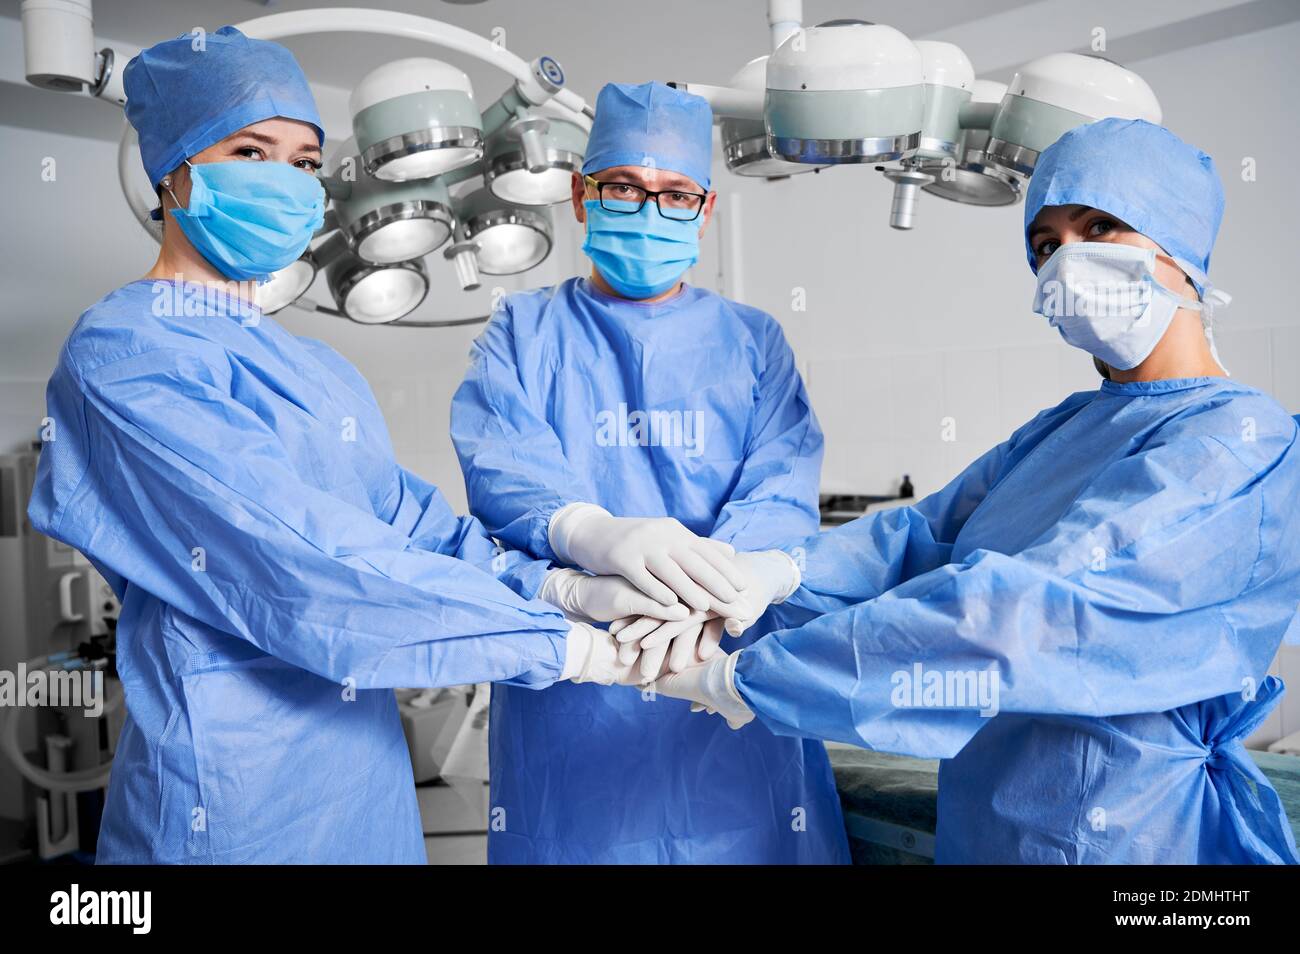 Medizinische Arbeiter verbinden ihre Hände als Symbol der Einheit. Gruppe von Ärzten mit Stapel von Händen tragen weiße sterile Handschuhe, blaue OP-Uniform. Konzept von Einheit, Teamwork und Medizin. Stockfoto